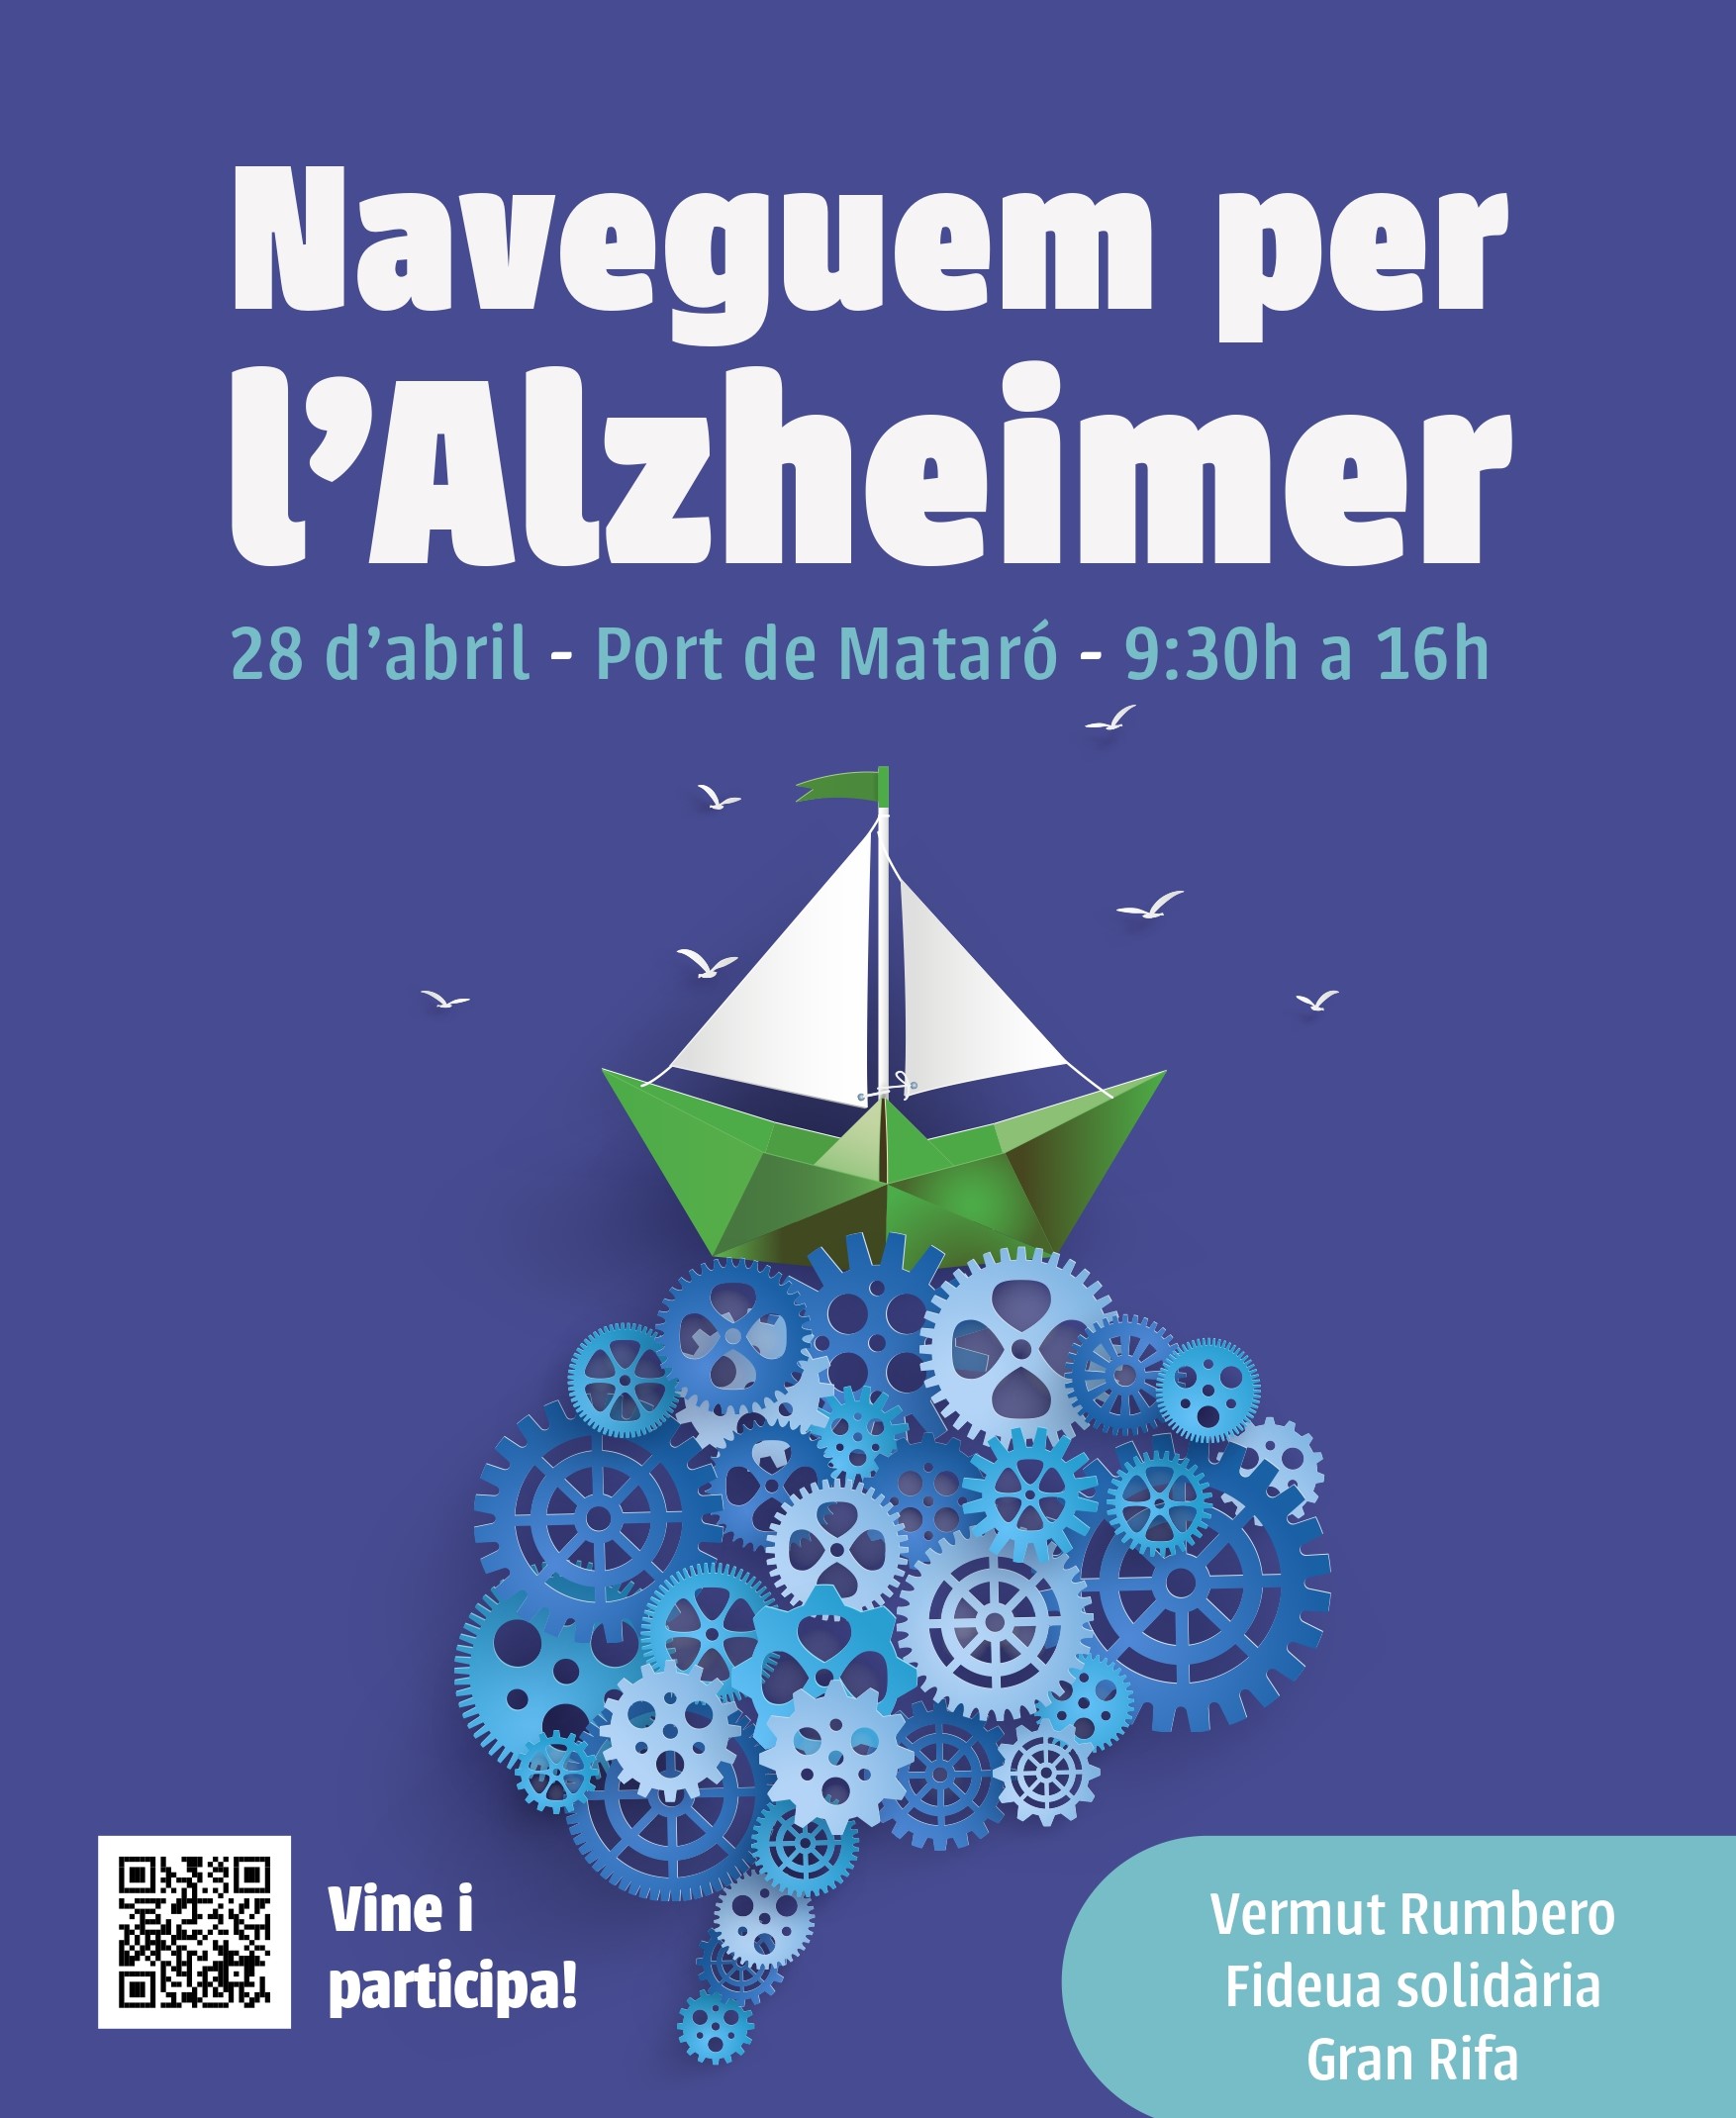 “Naveguem per l’Alzheimer”, 3ª edició de la “Regata Inclusiva THALASSA”.